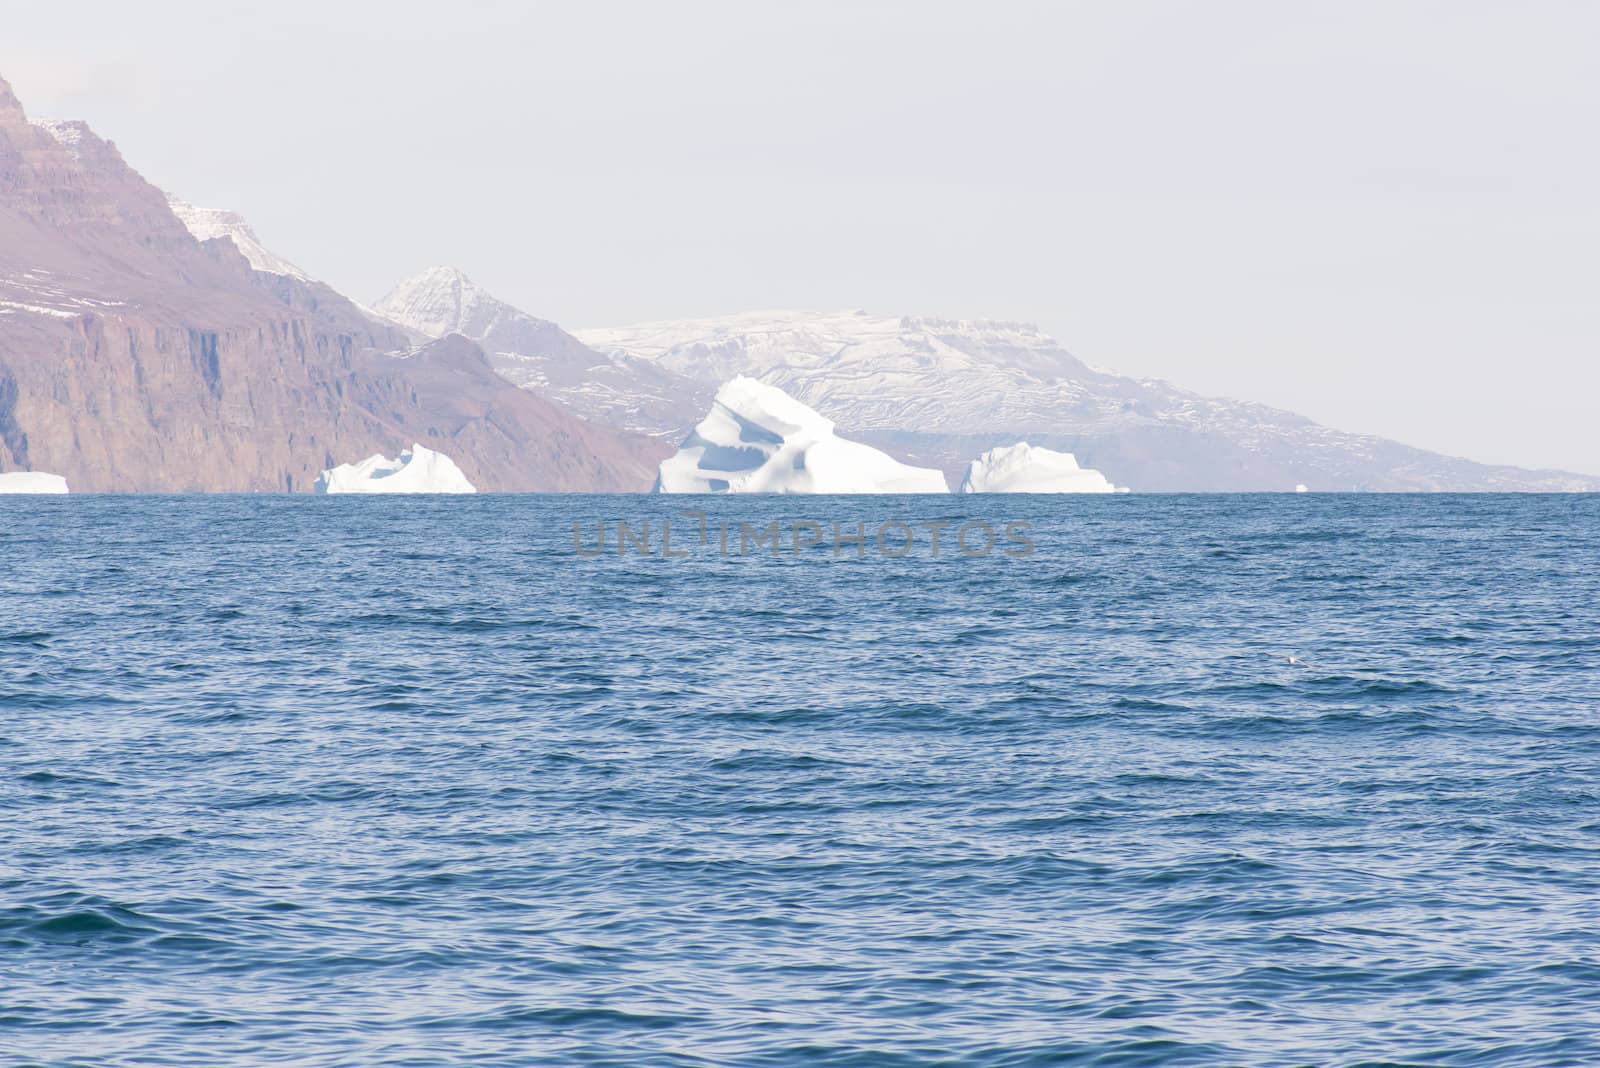 Arctic landscape in Greenland around Disko Island